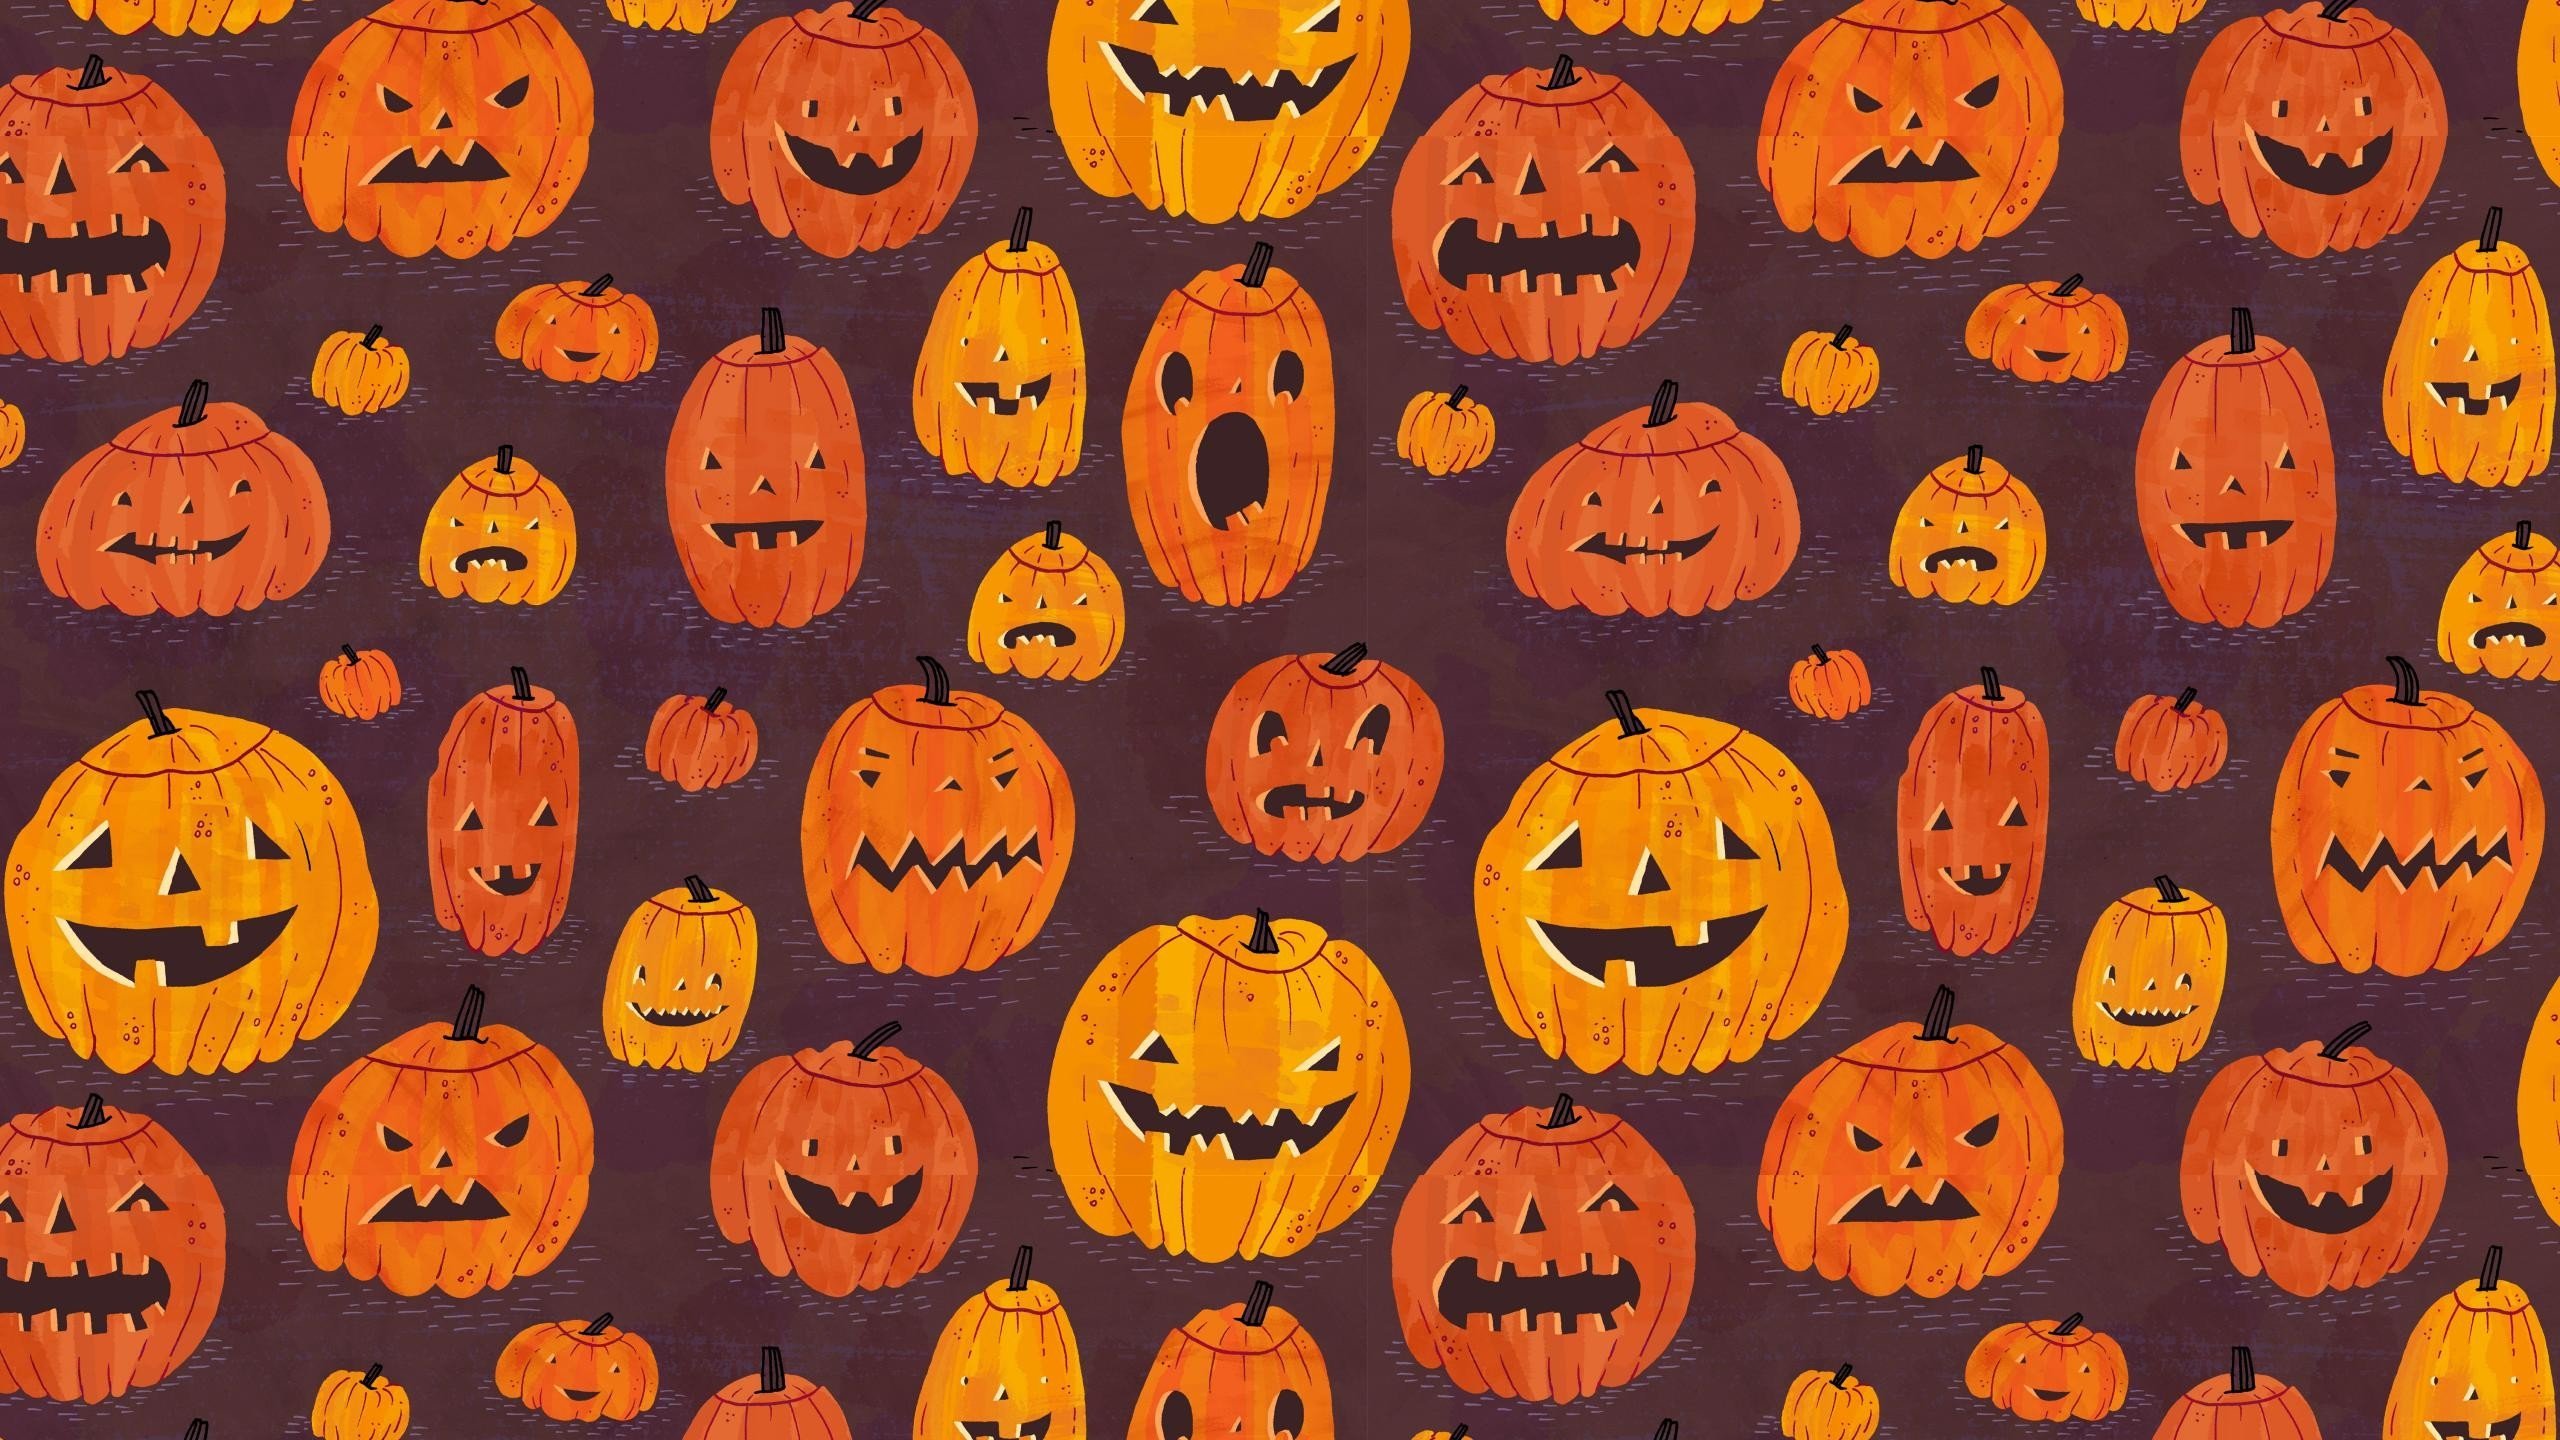 Wallpaper, 2560x1440 px, Halloween, pumpkin 2560x1440